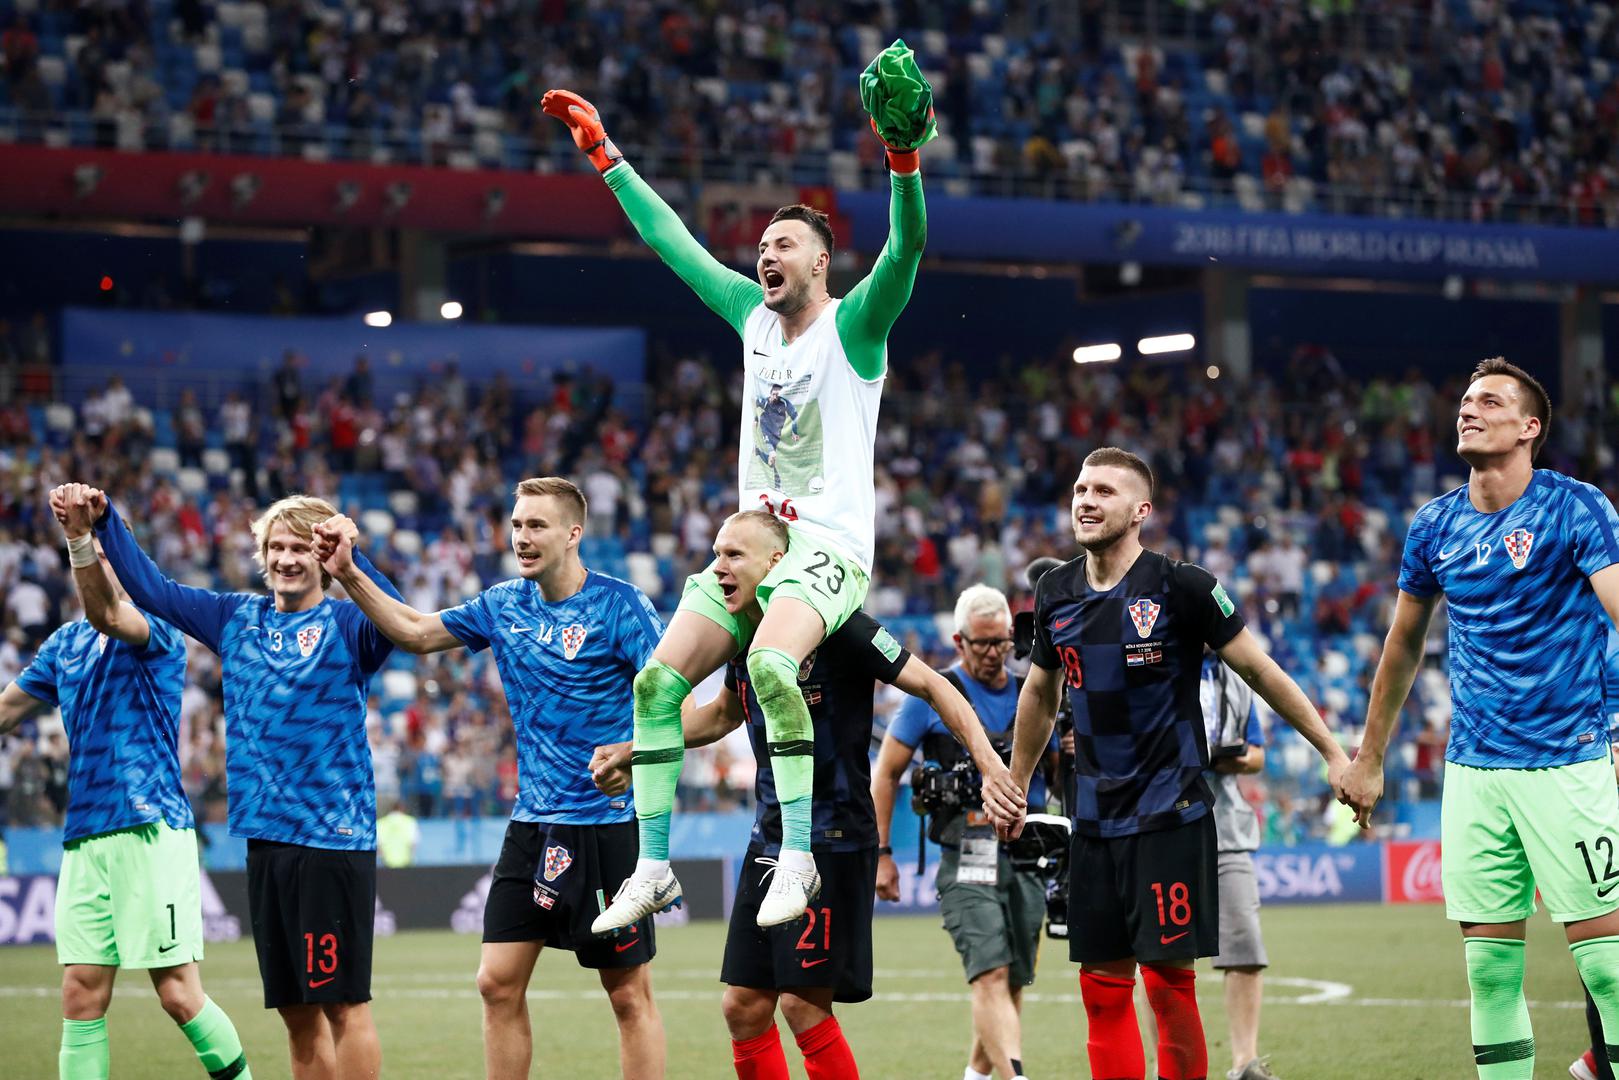 Hrvatska je nakon velike drame i lutrije jedanaesteraca s 4:3 izbacila Dansku i izborila četvrtfinale Svjetskog prvenstva u Rusiji.

